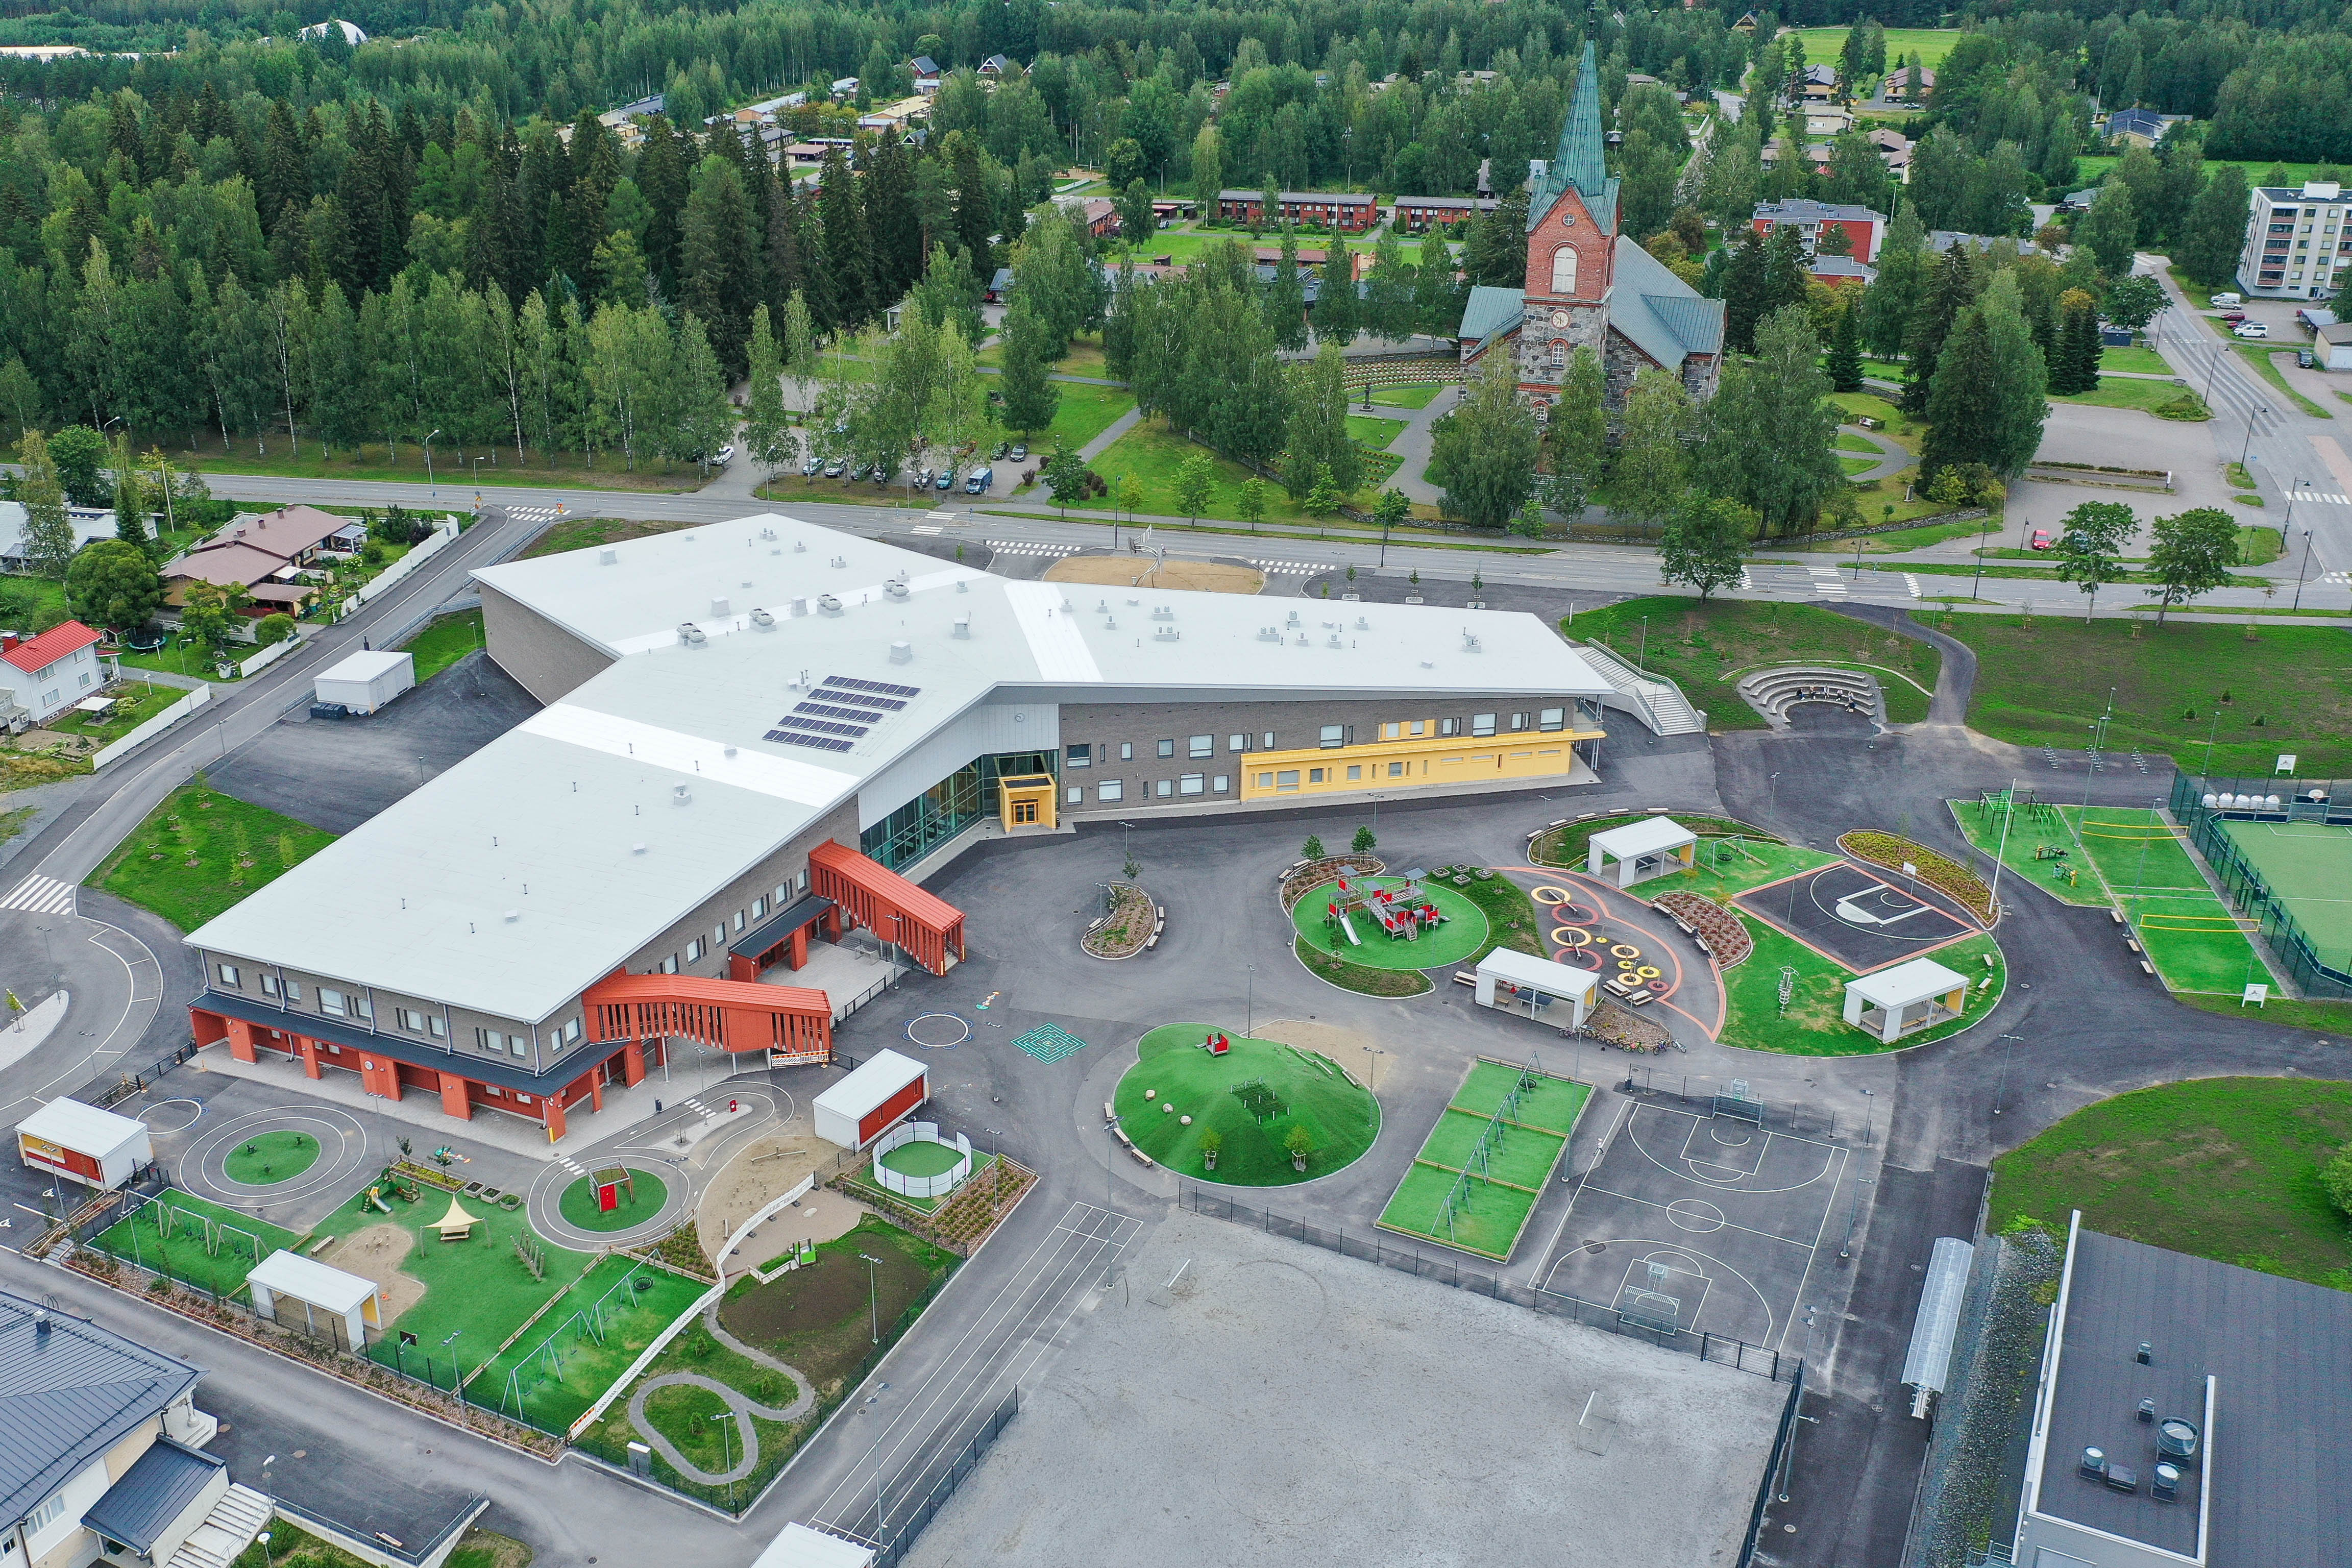 YIT rakensi elinkaarimallilla Martti Talvela -kampuksen Juvalle. Muun muassa laadukas sisäilma, kosteudenhallinta ja energiatehokkuus olivat suunnittelun keskiössä. Kampus saavutti ensimmäisenä Suomessa RTS-sertifioinnin neljän tähden luokitustason.